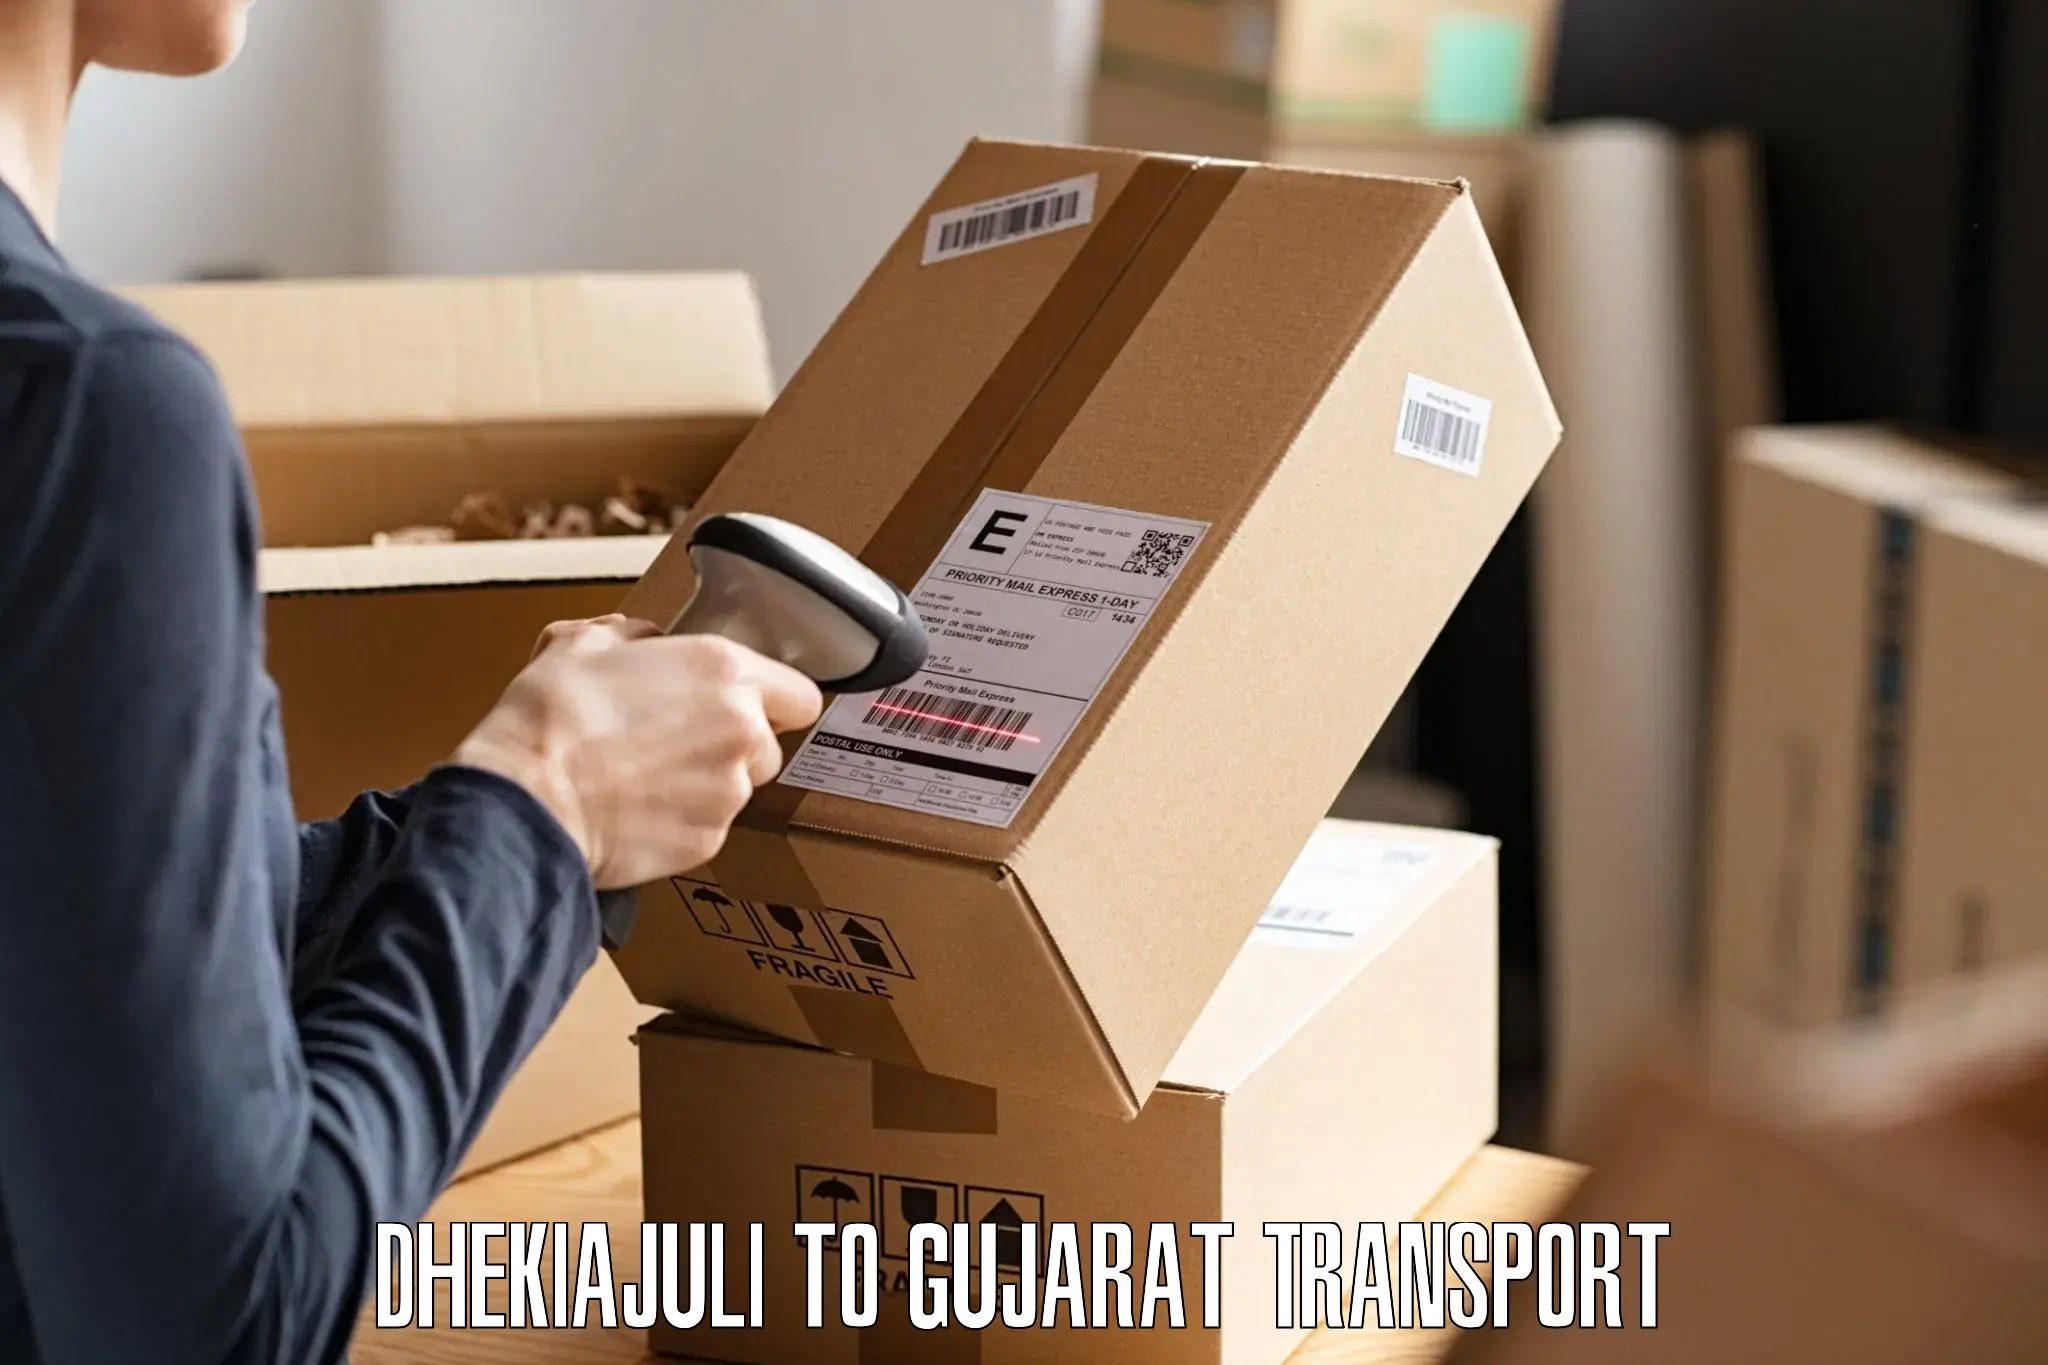 Online transport booking Dhekiajuli to Lunawada